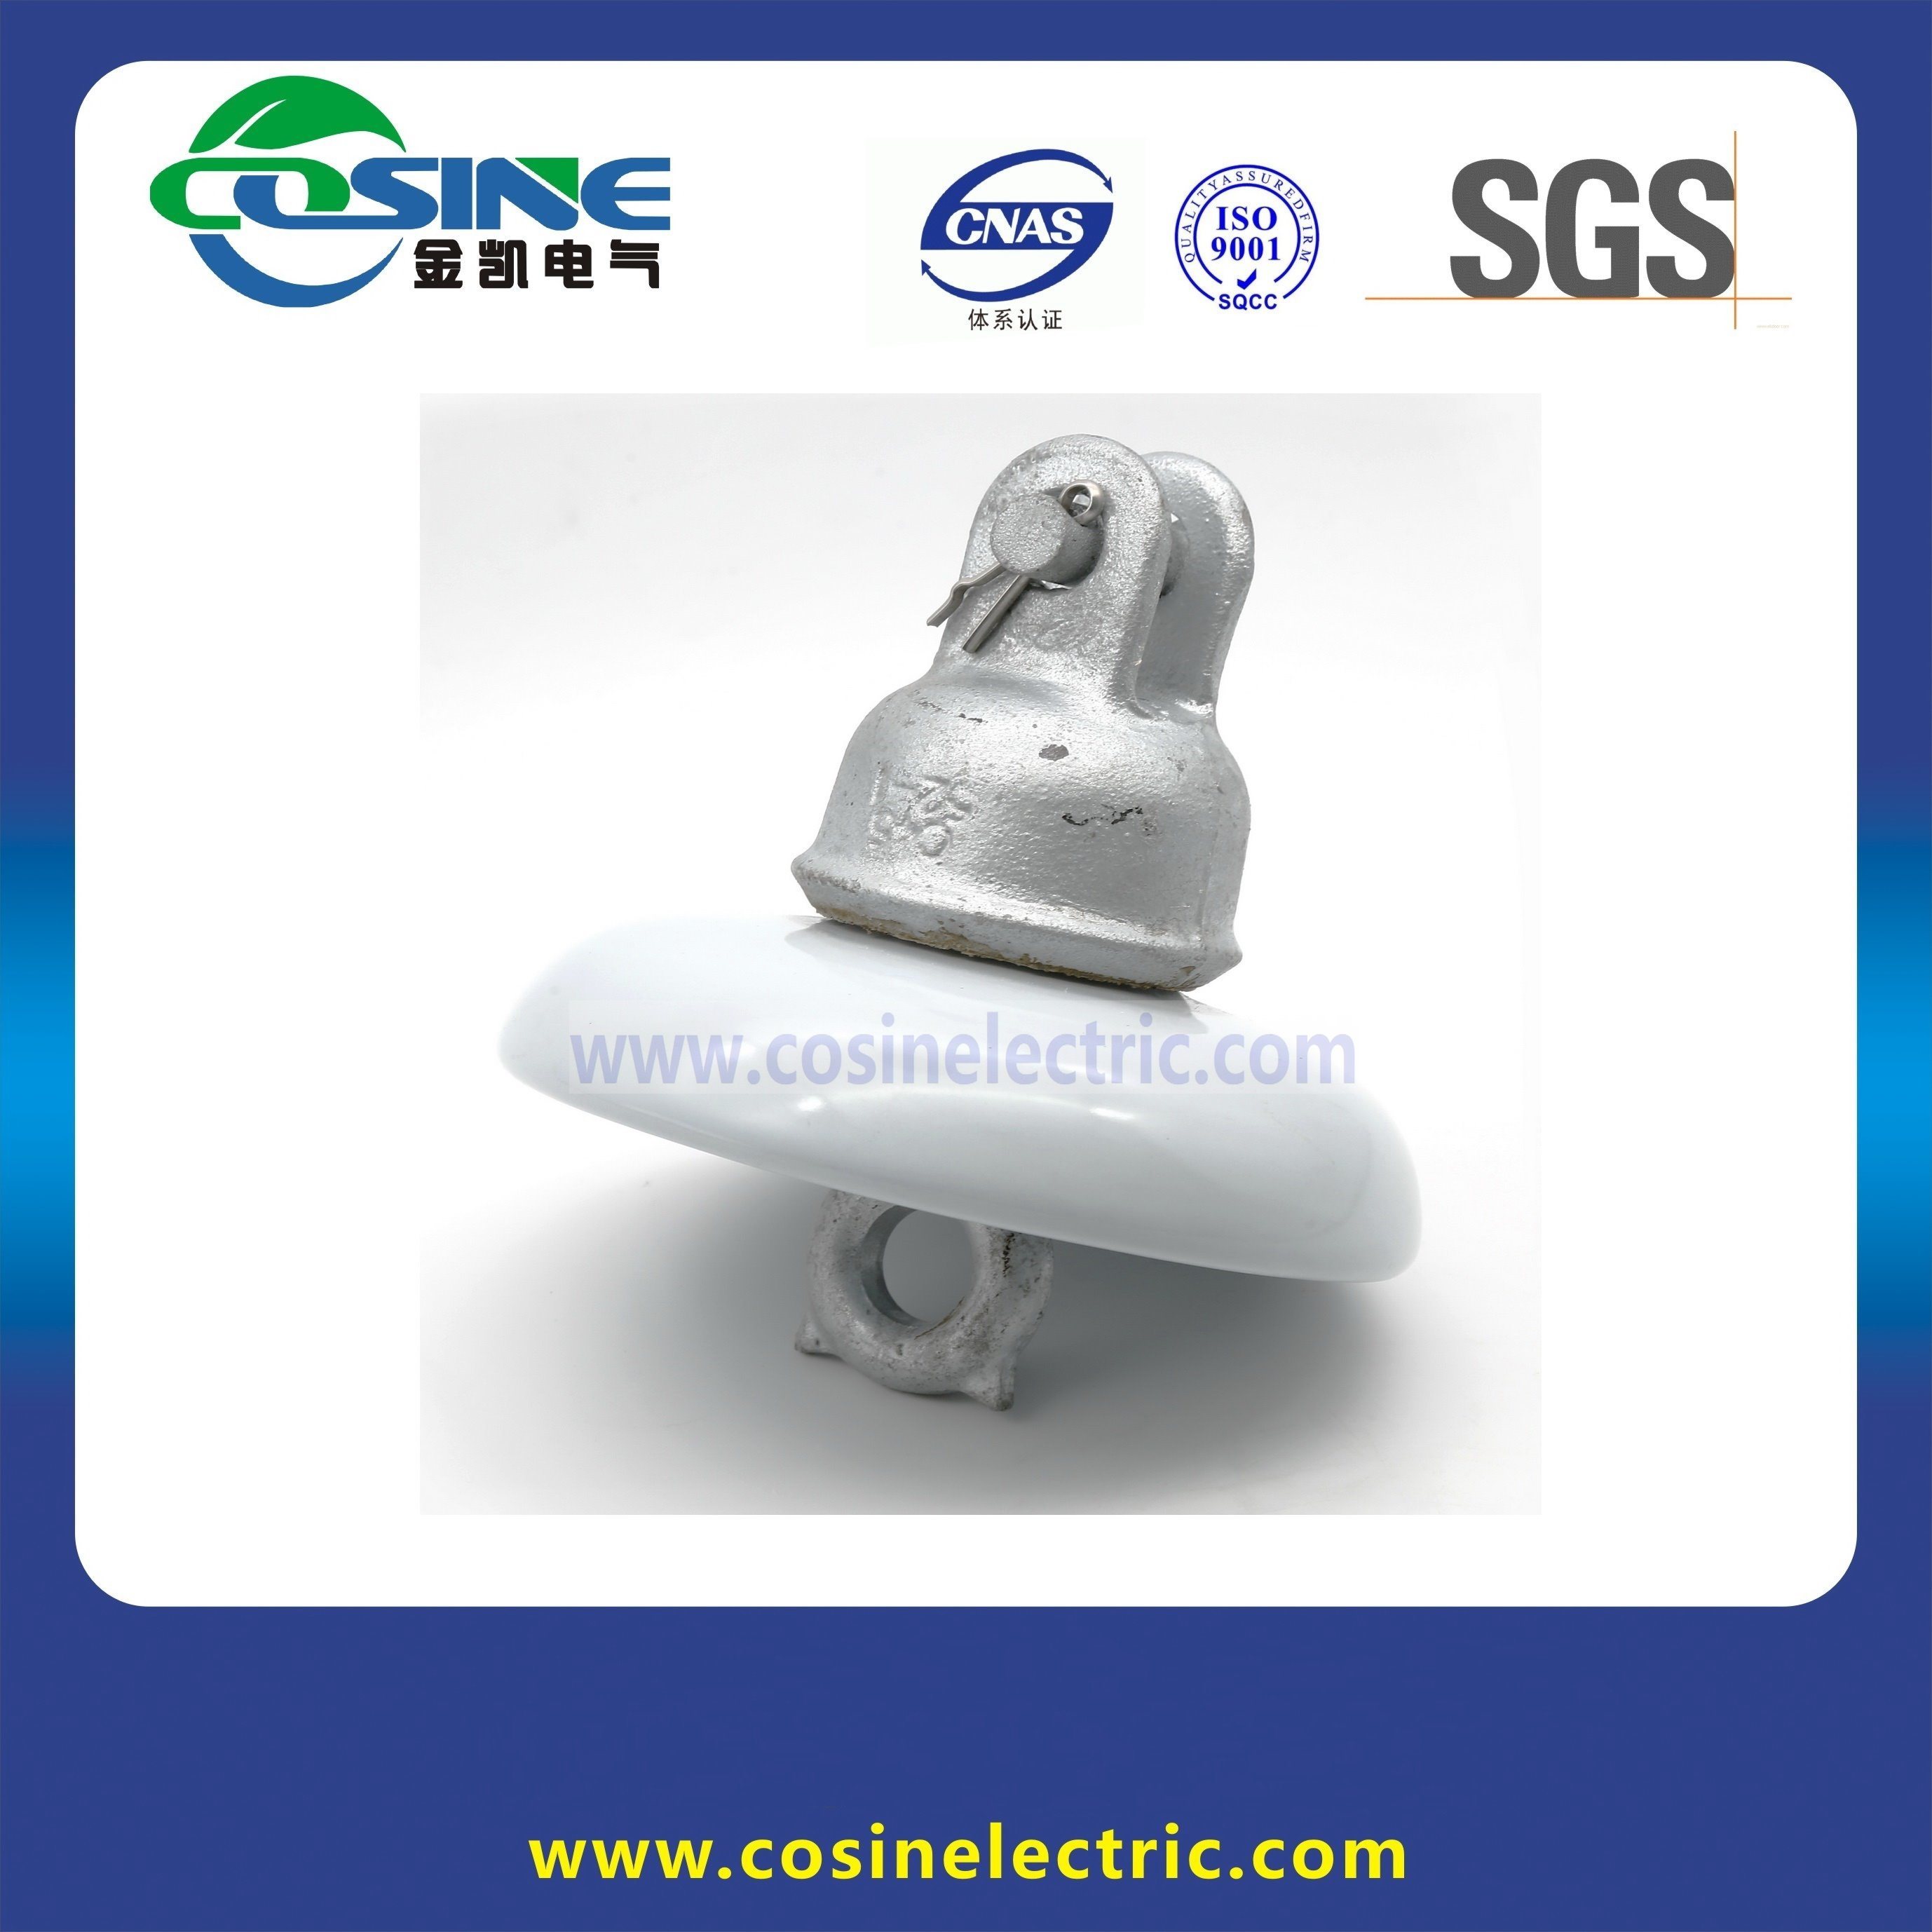 ANSI Standard Suspension Ceramic/Porcelain Insulator for Power Transmission Line